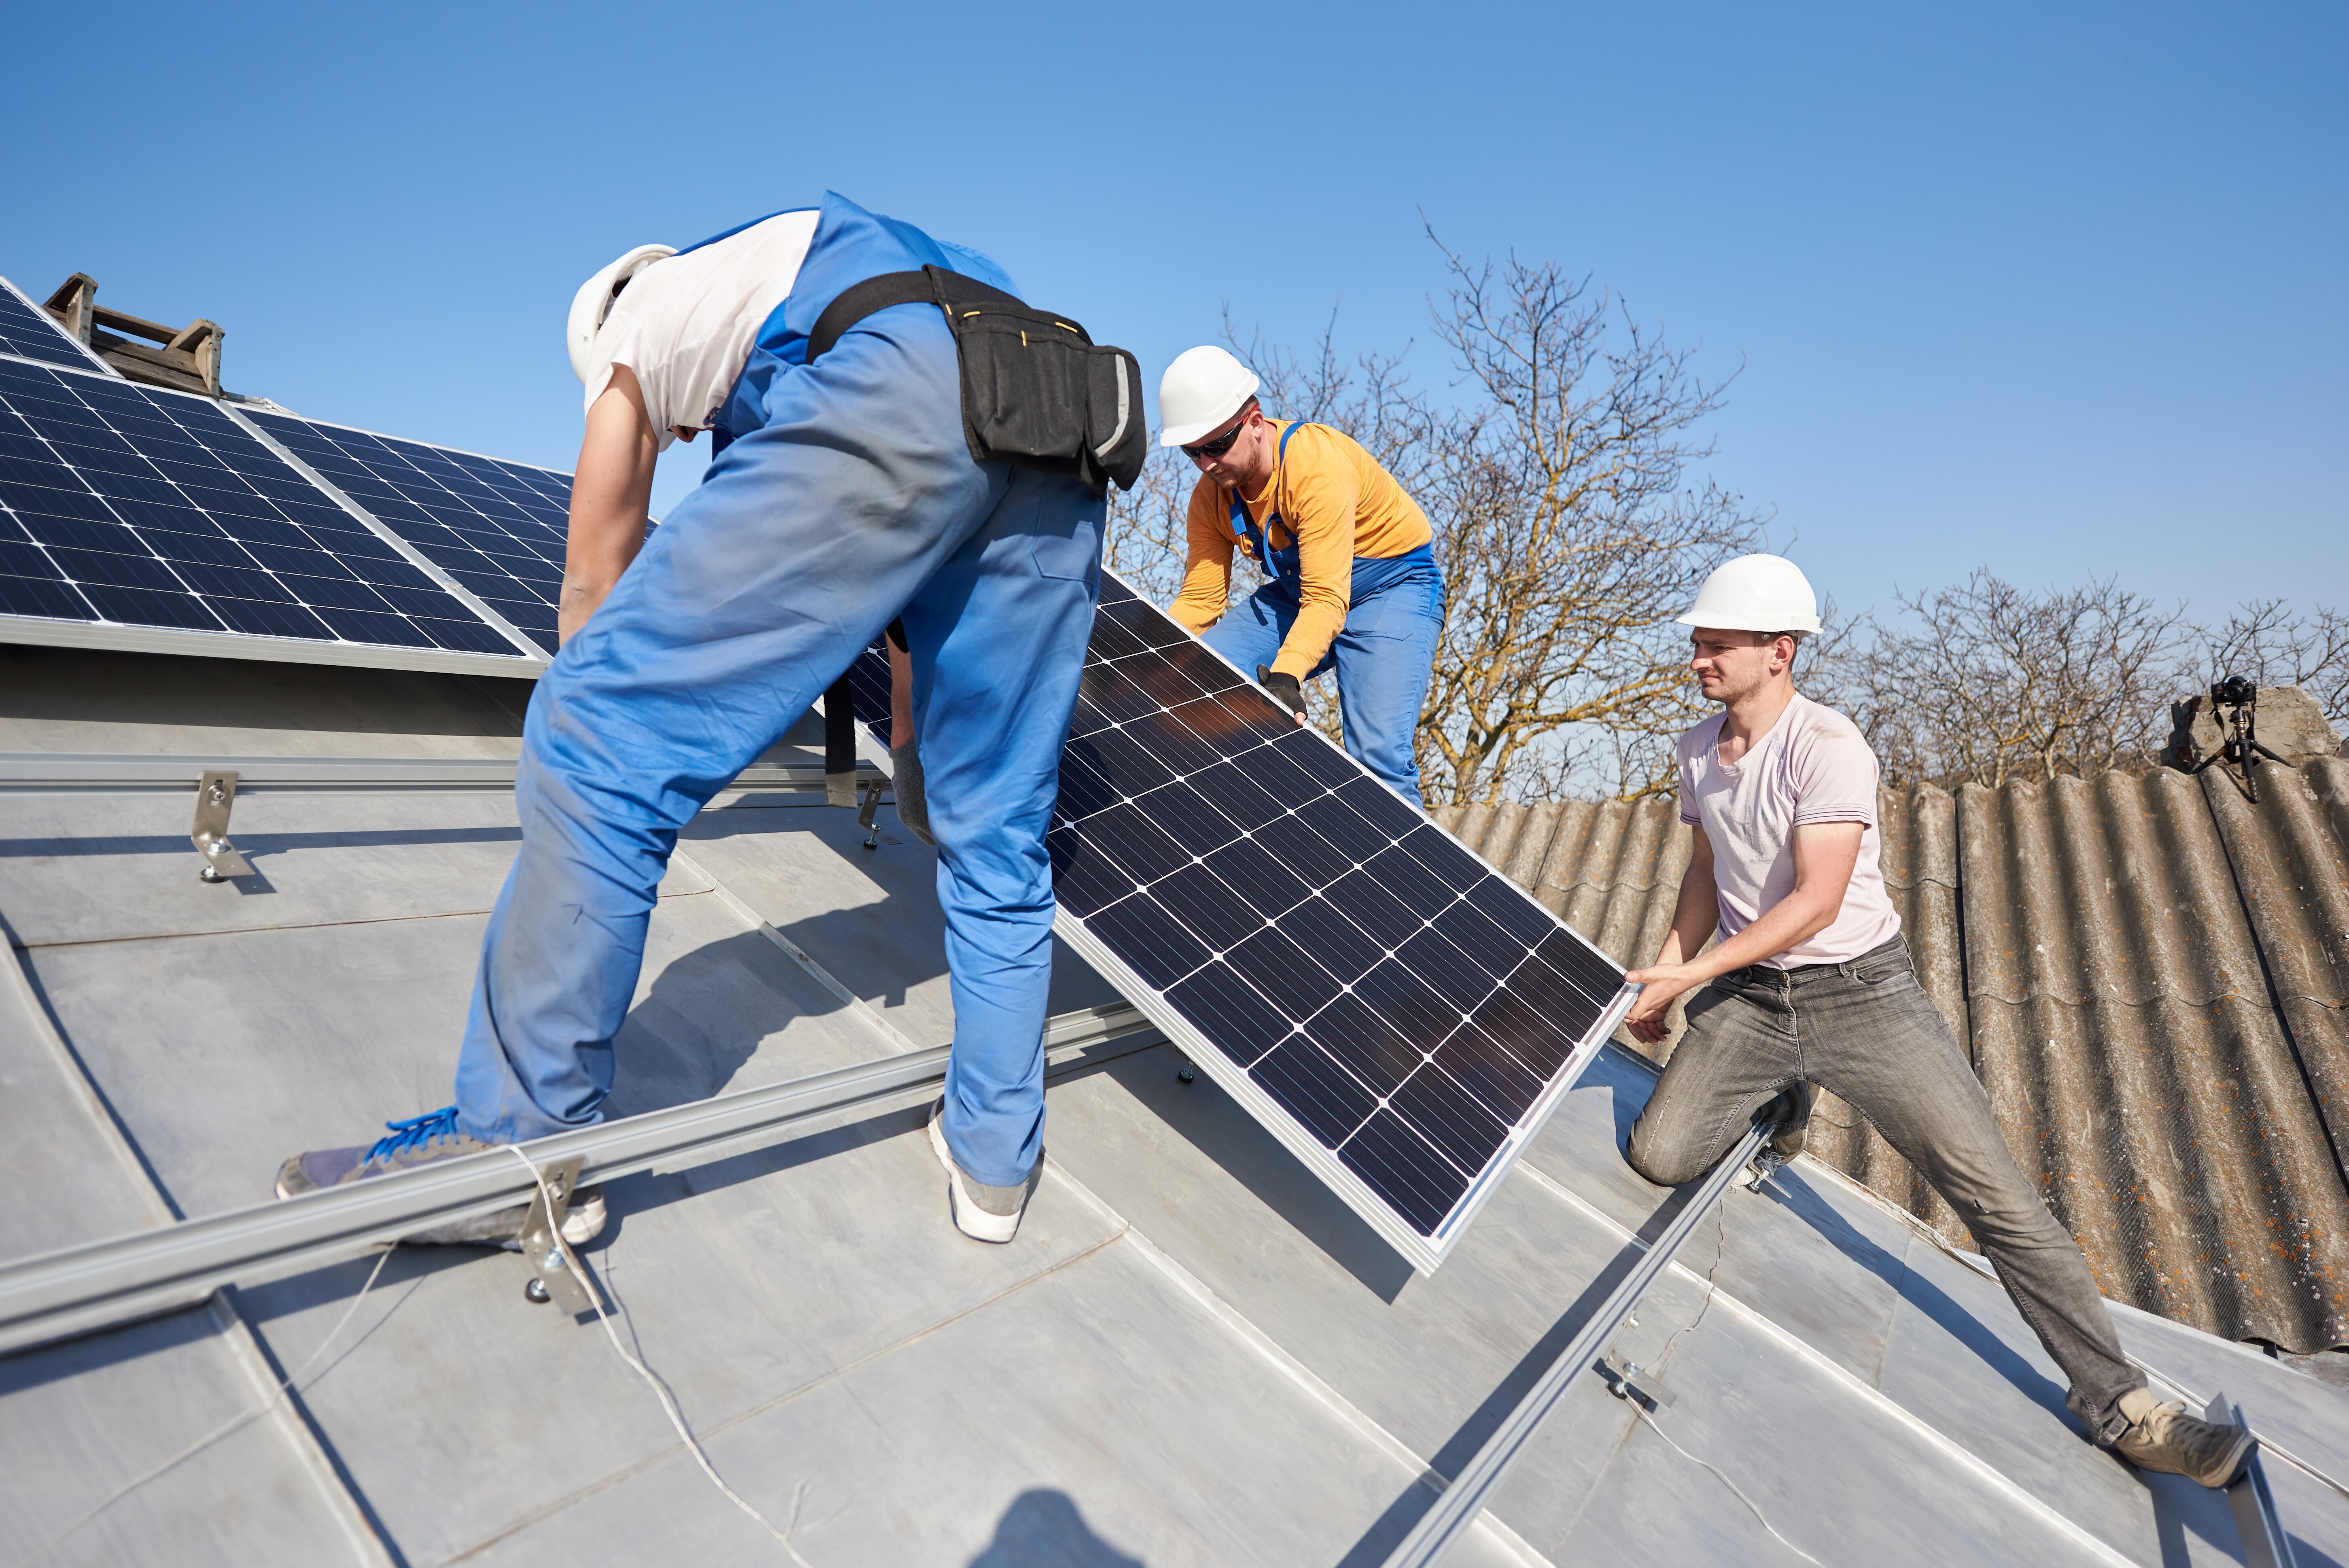 En tejados inclinados, los paneles solares se pueden colocar siguiendo su inclinación